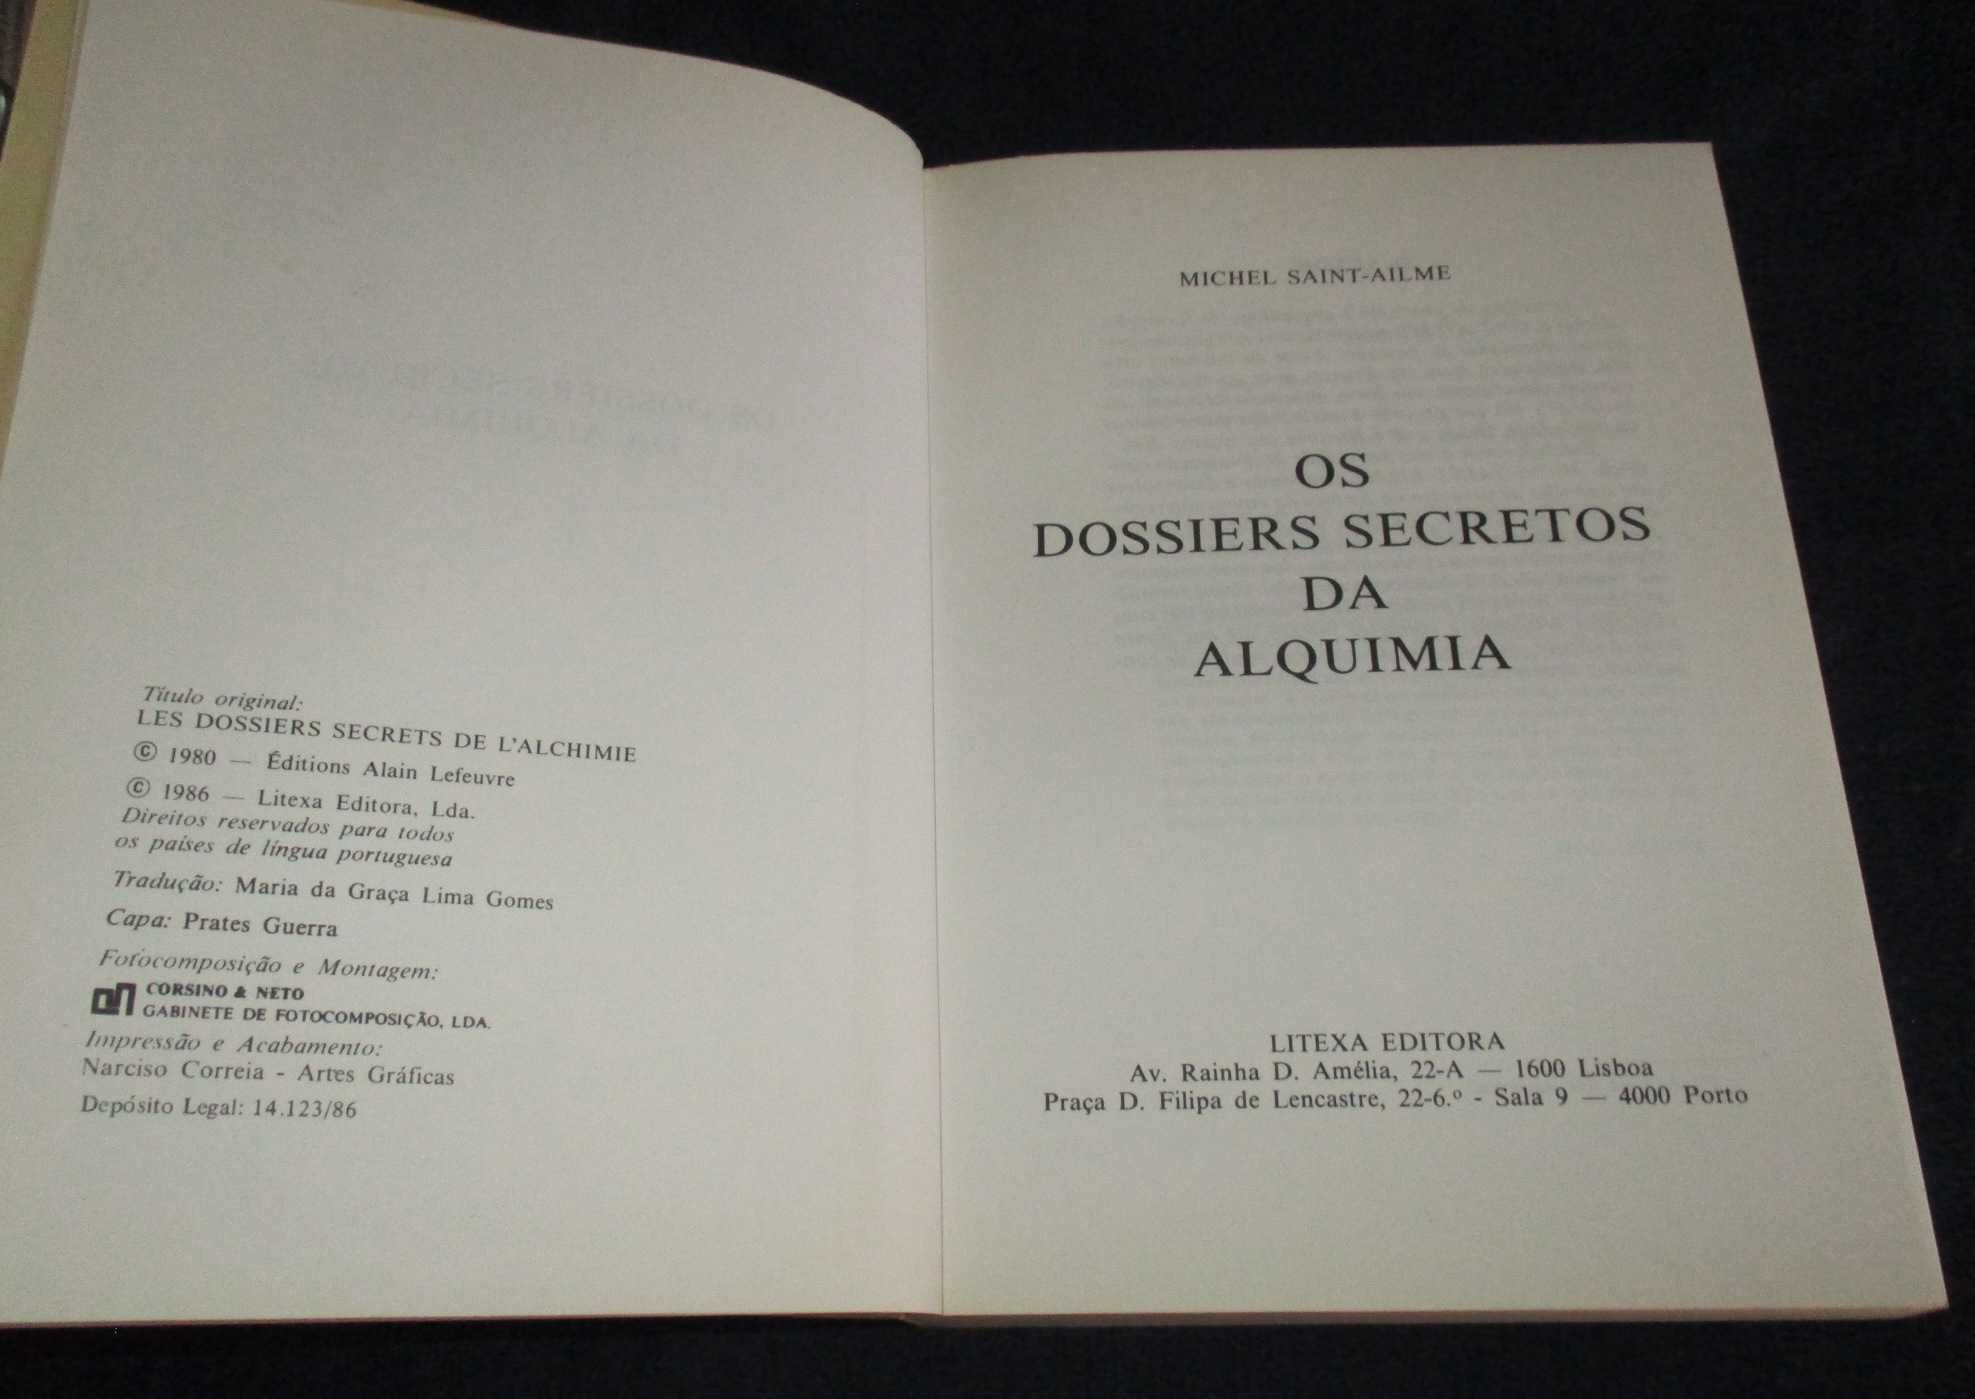 Livro Os dossiers secretos da Alquimia Michel Saint-Ailme